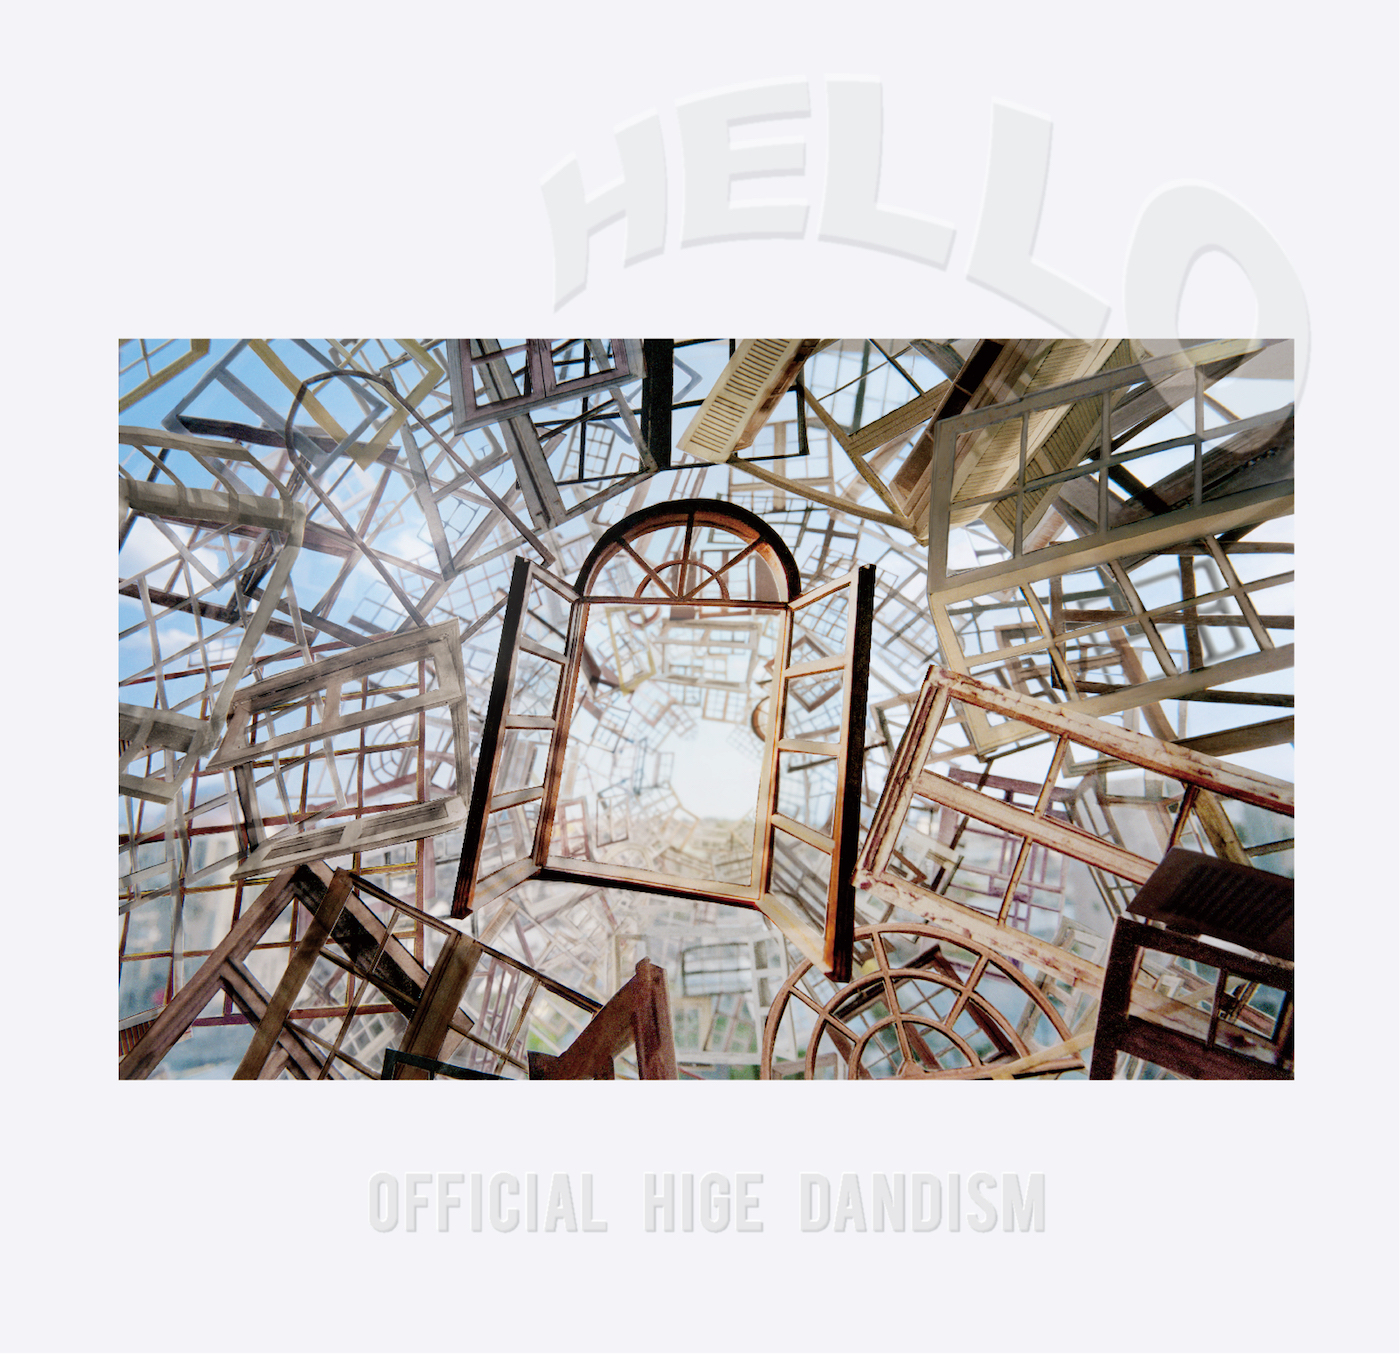 Official髭男dism (オフィシャルヒゲダンディズム) 3rd EP『HELLO EP (ハロー イーピー)』(2020年8月5日発売) 高画質CDジャケット画像 (ジャケ写)